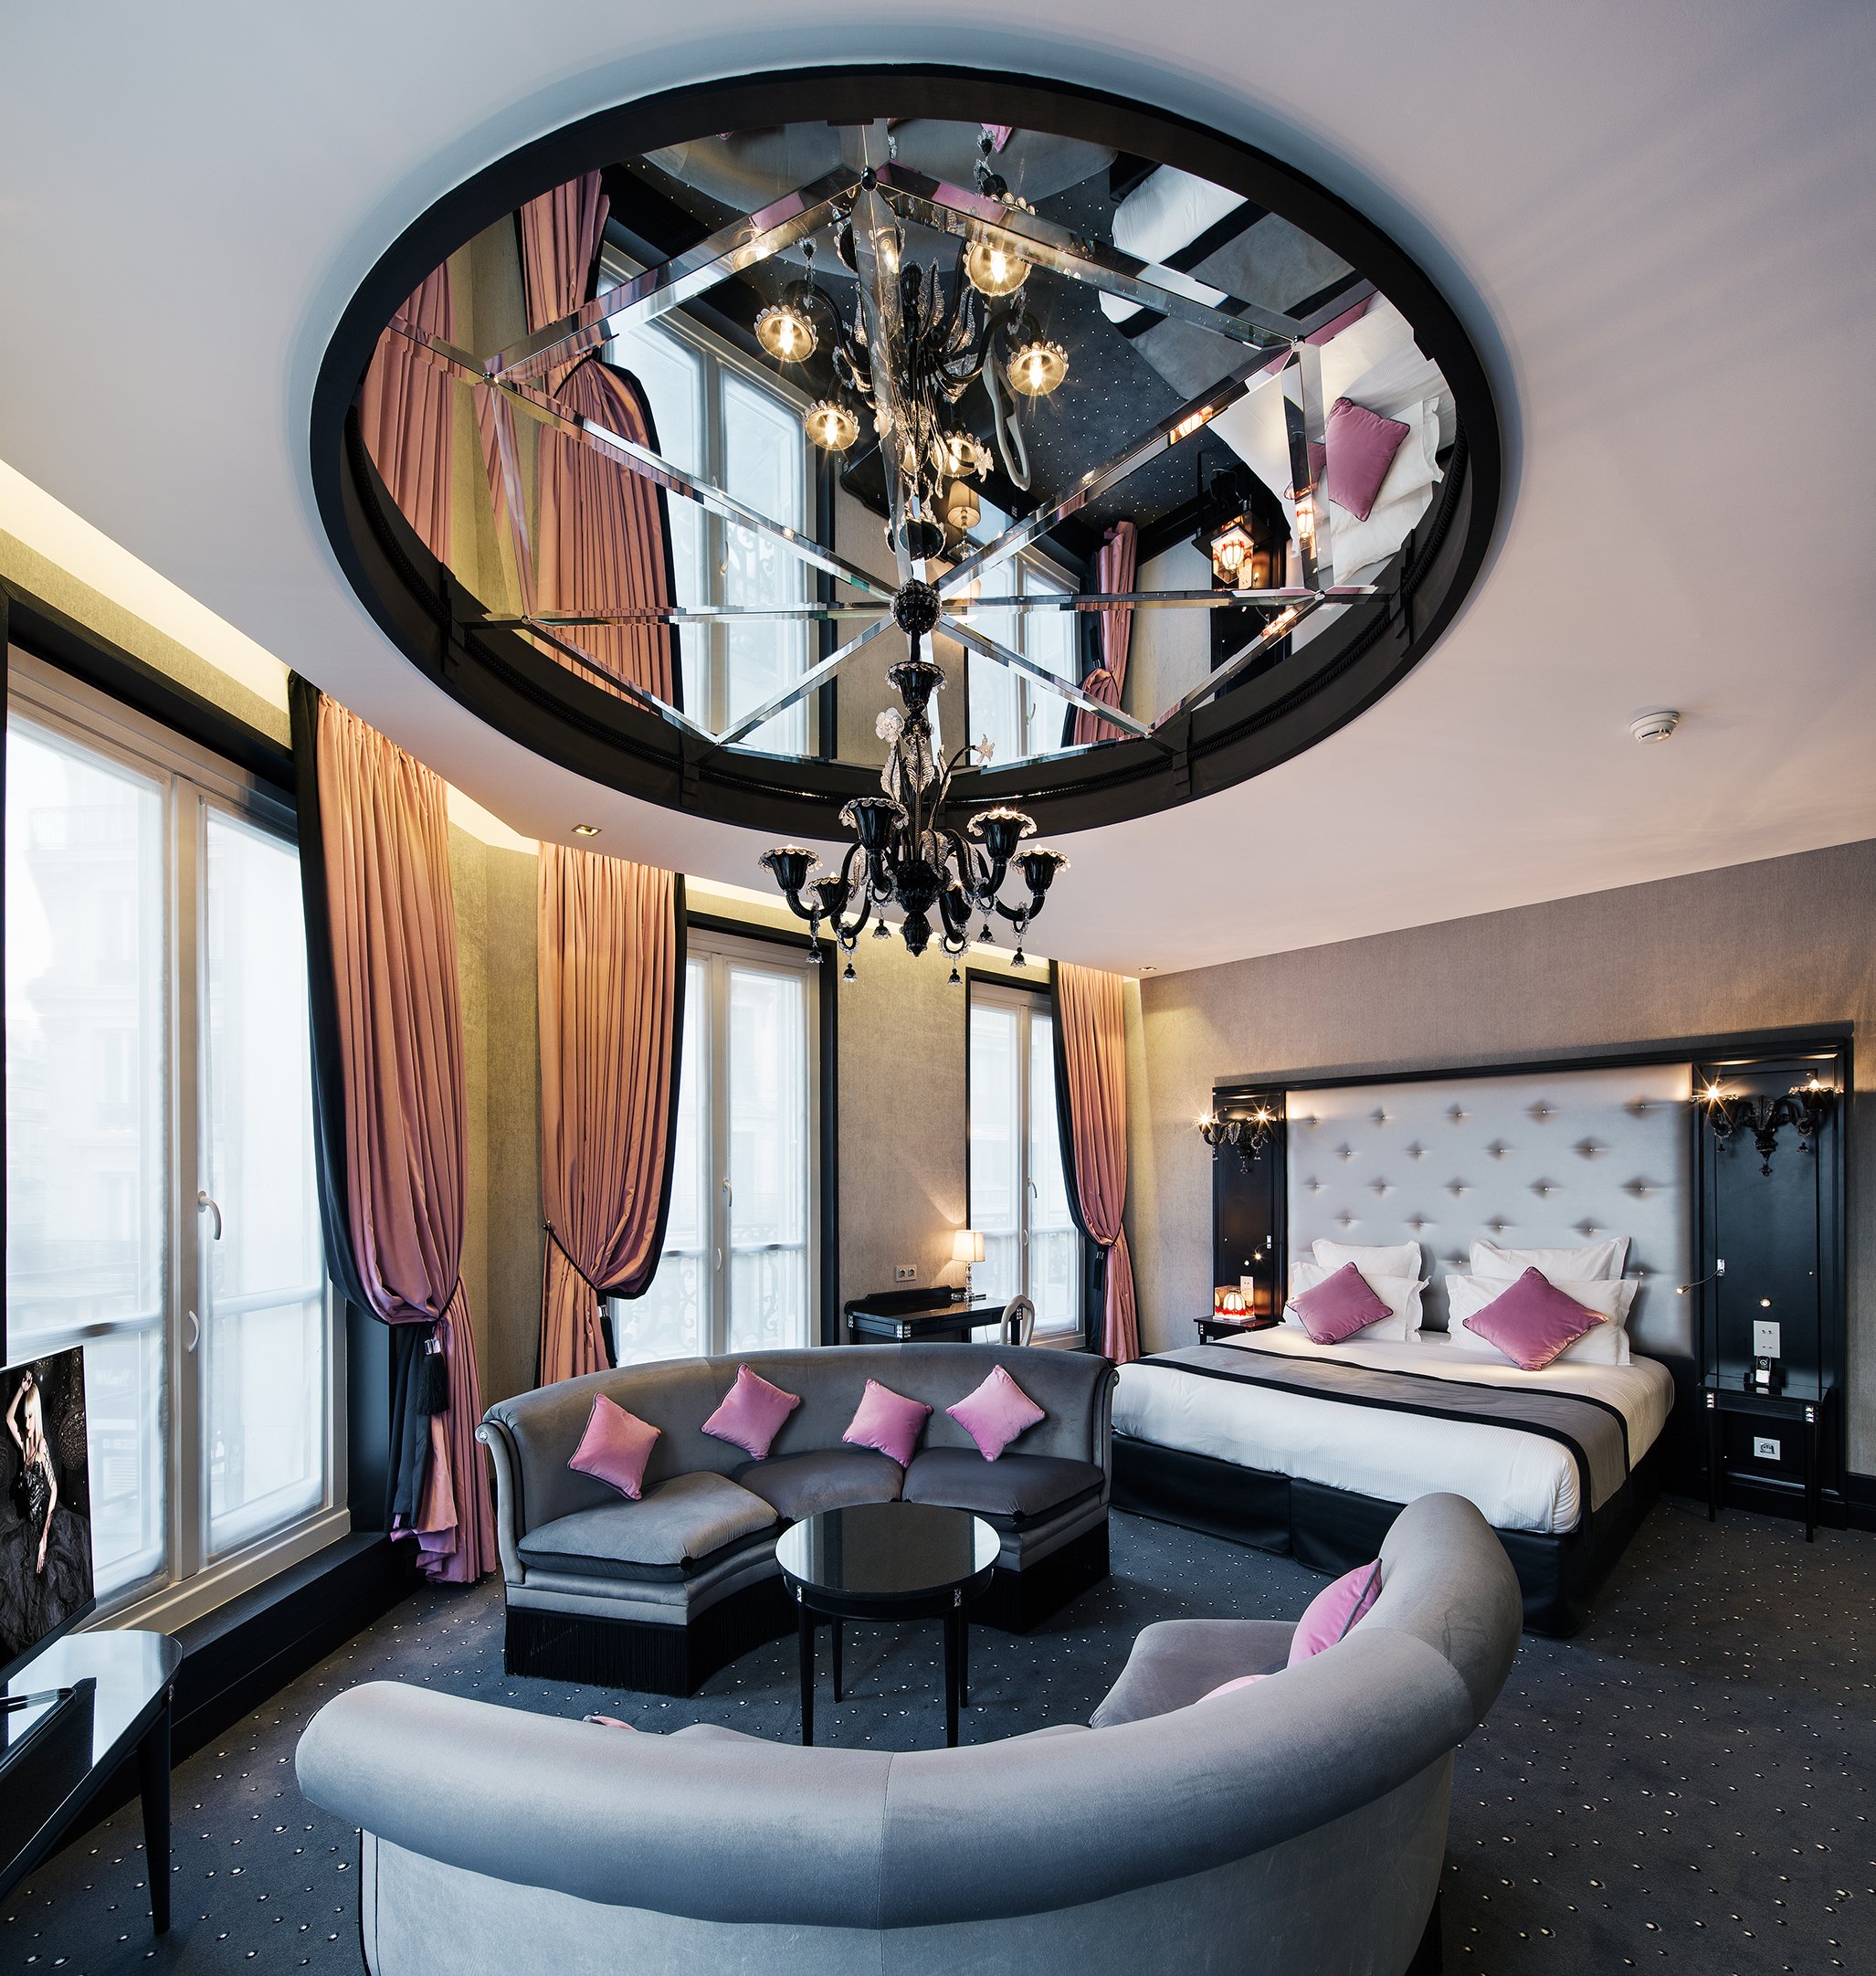 Maison Albar Hotels Le Diamond | Hôtel avec miroir au plafond Paris